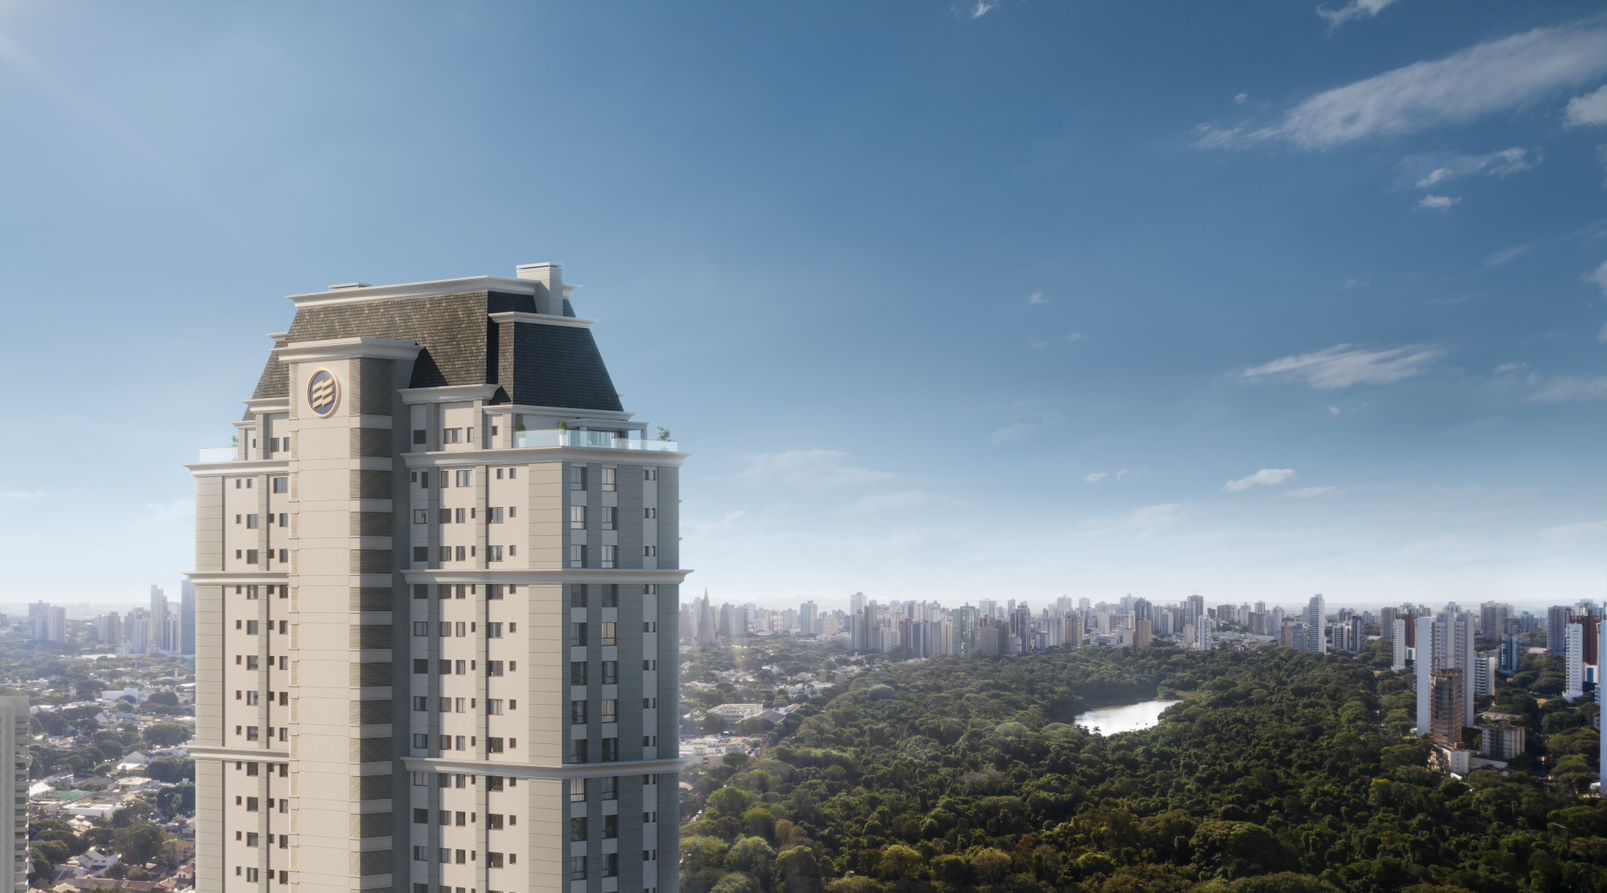 Residencial de luxo em Maringá  terá quadra assinada por Guga Kuerten, SPA e apartamentos de R$ 4,4 milhões